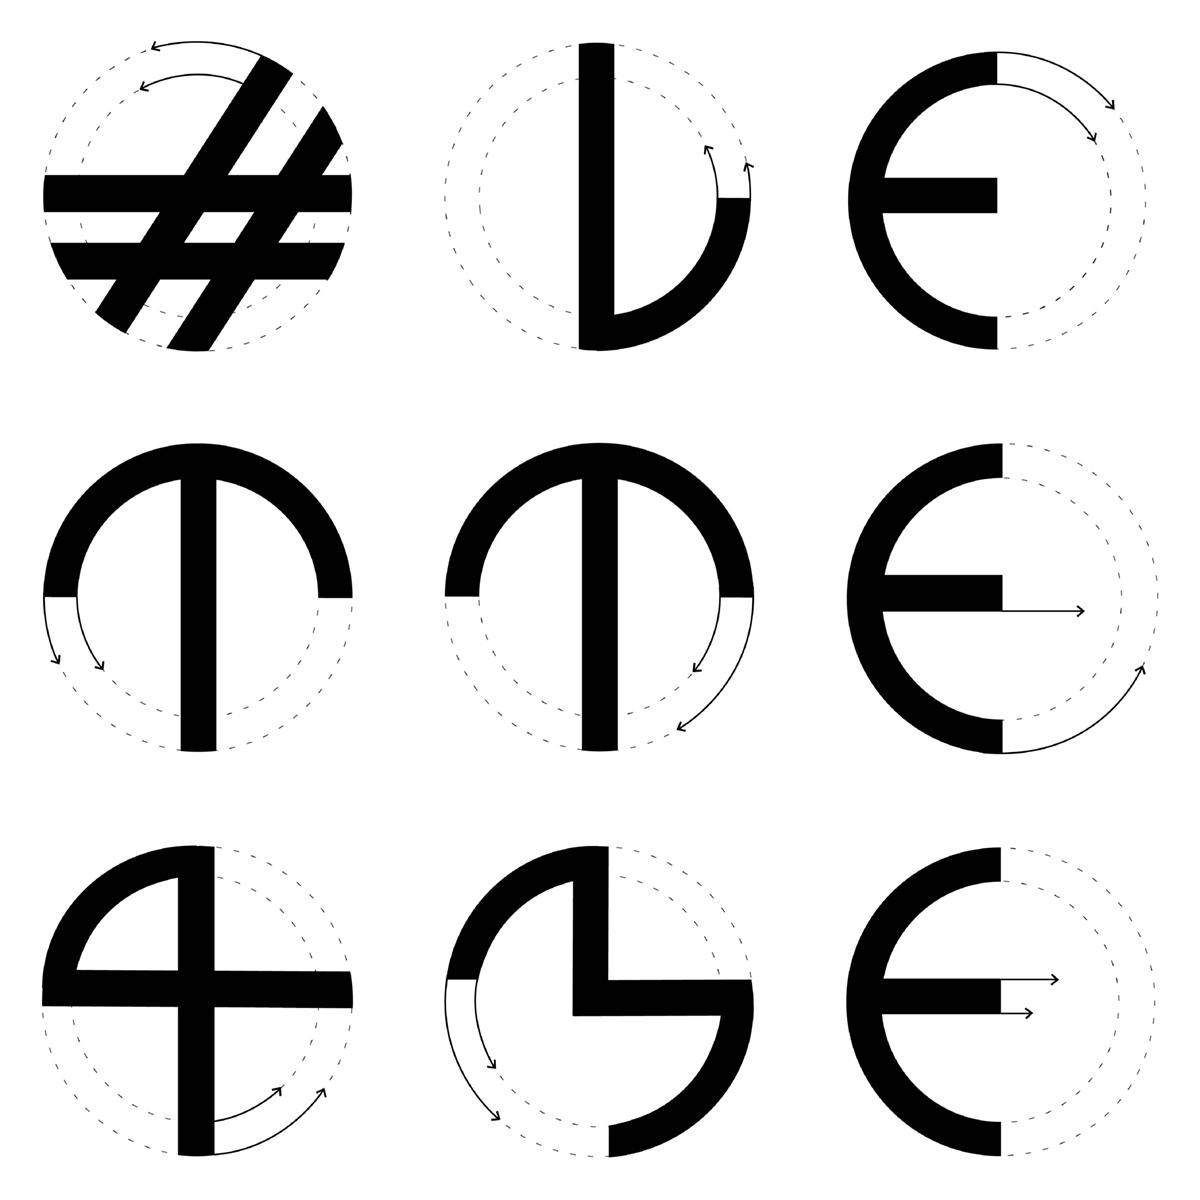 Unterrichtsprojekt Grafikdesign #lette4me